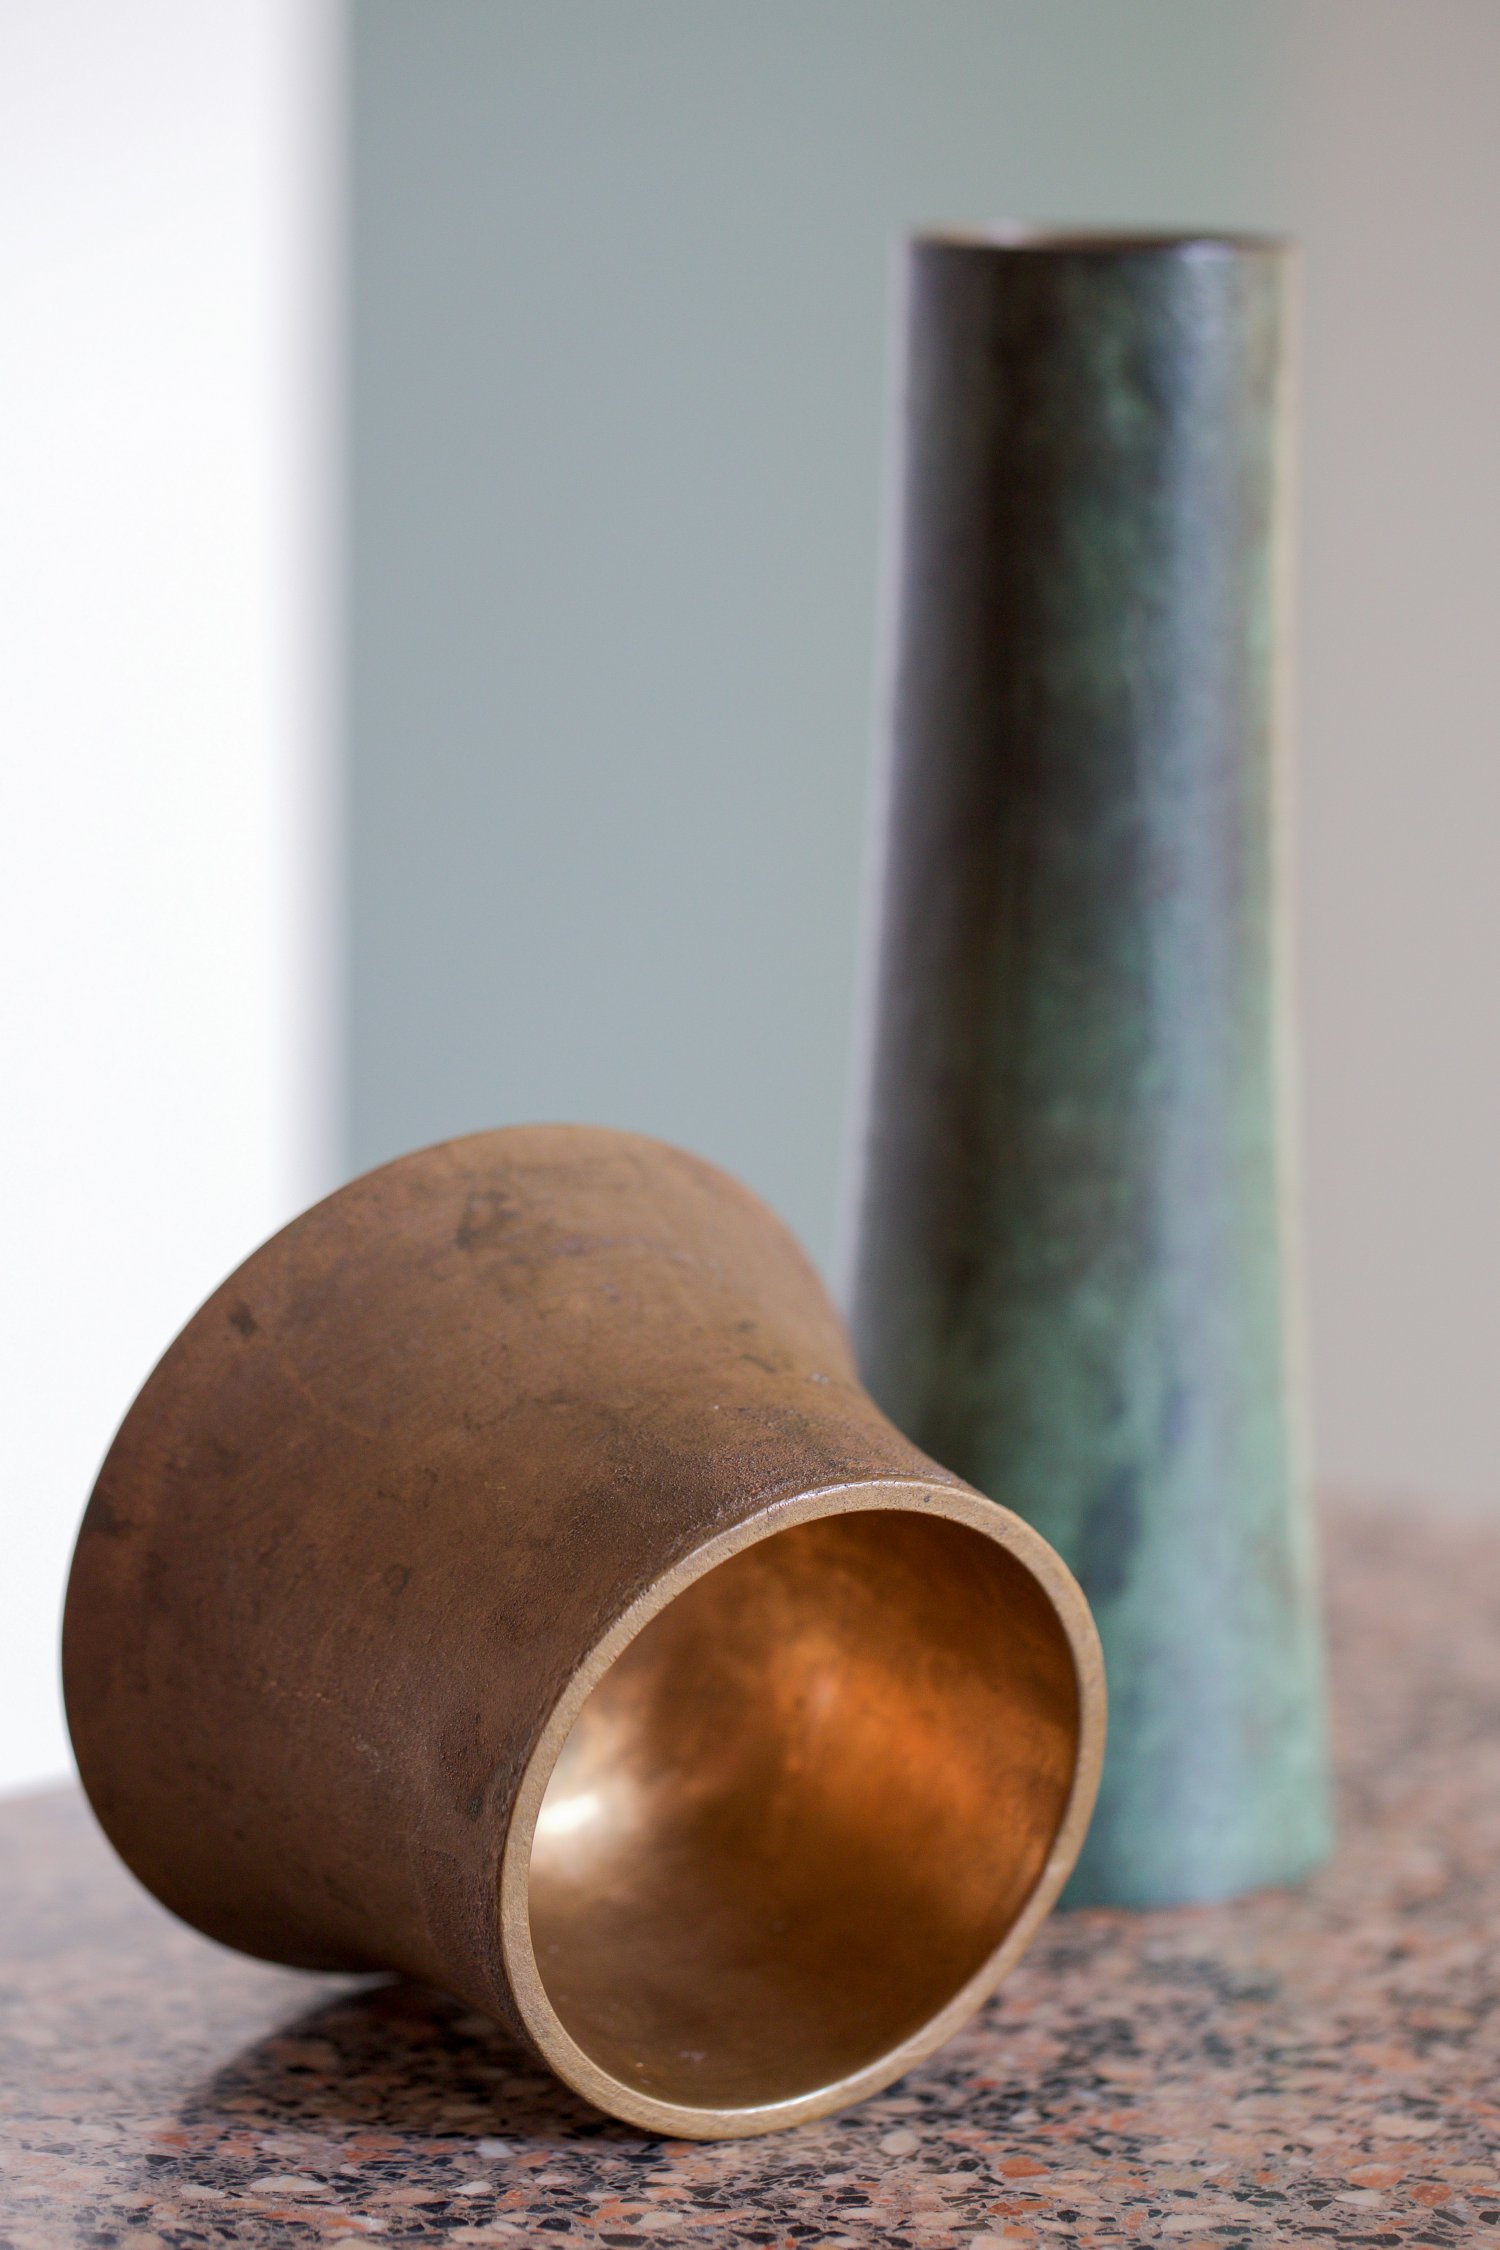 Angelo Mangiarotti bronze vases